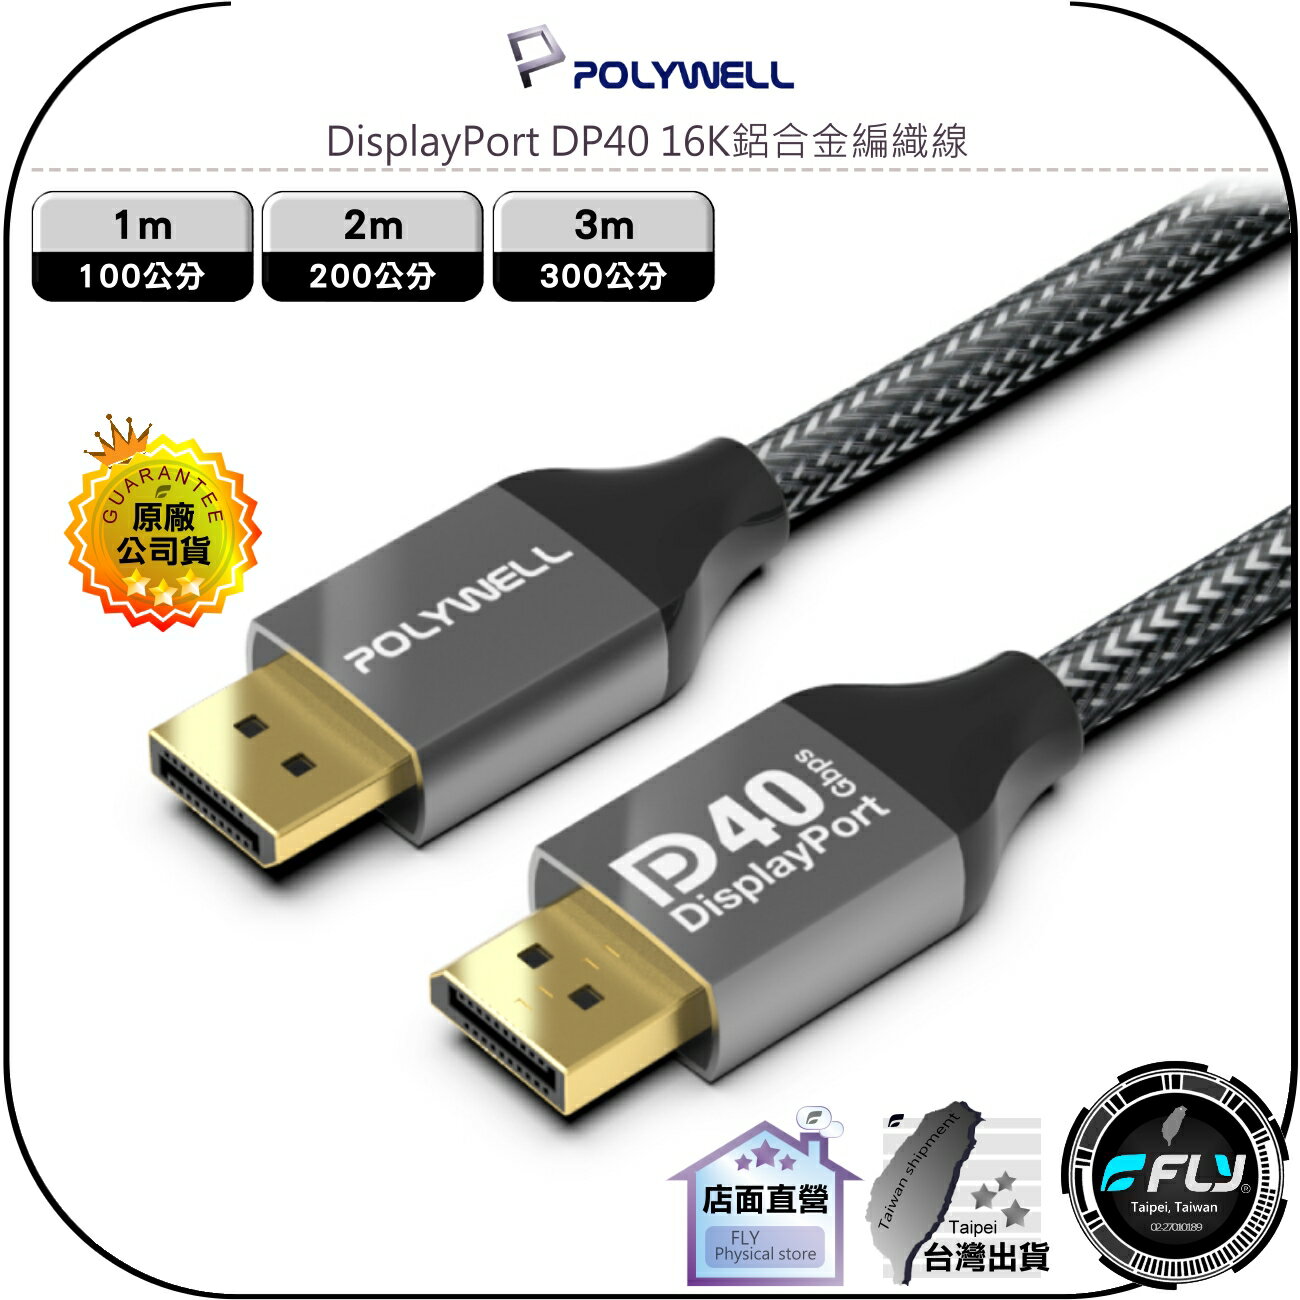 【飛翔商城】POLYWELL 寶利威爾 DisplayPort DP40 16K鋁合金編織線◉電競連接◉1m/2m/3m